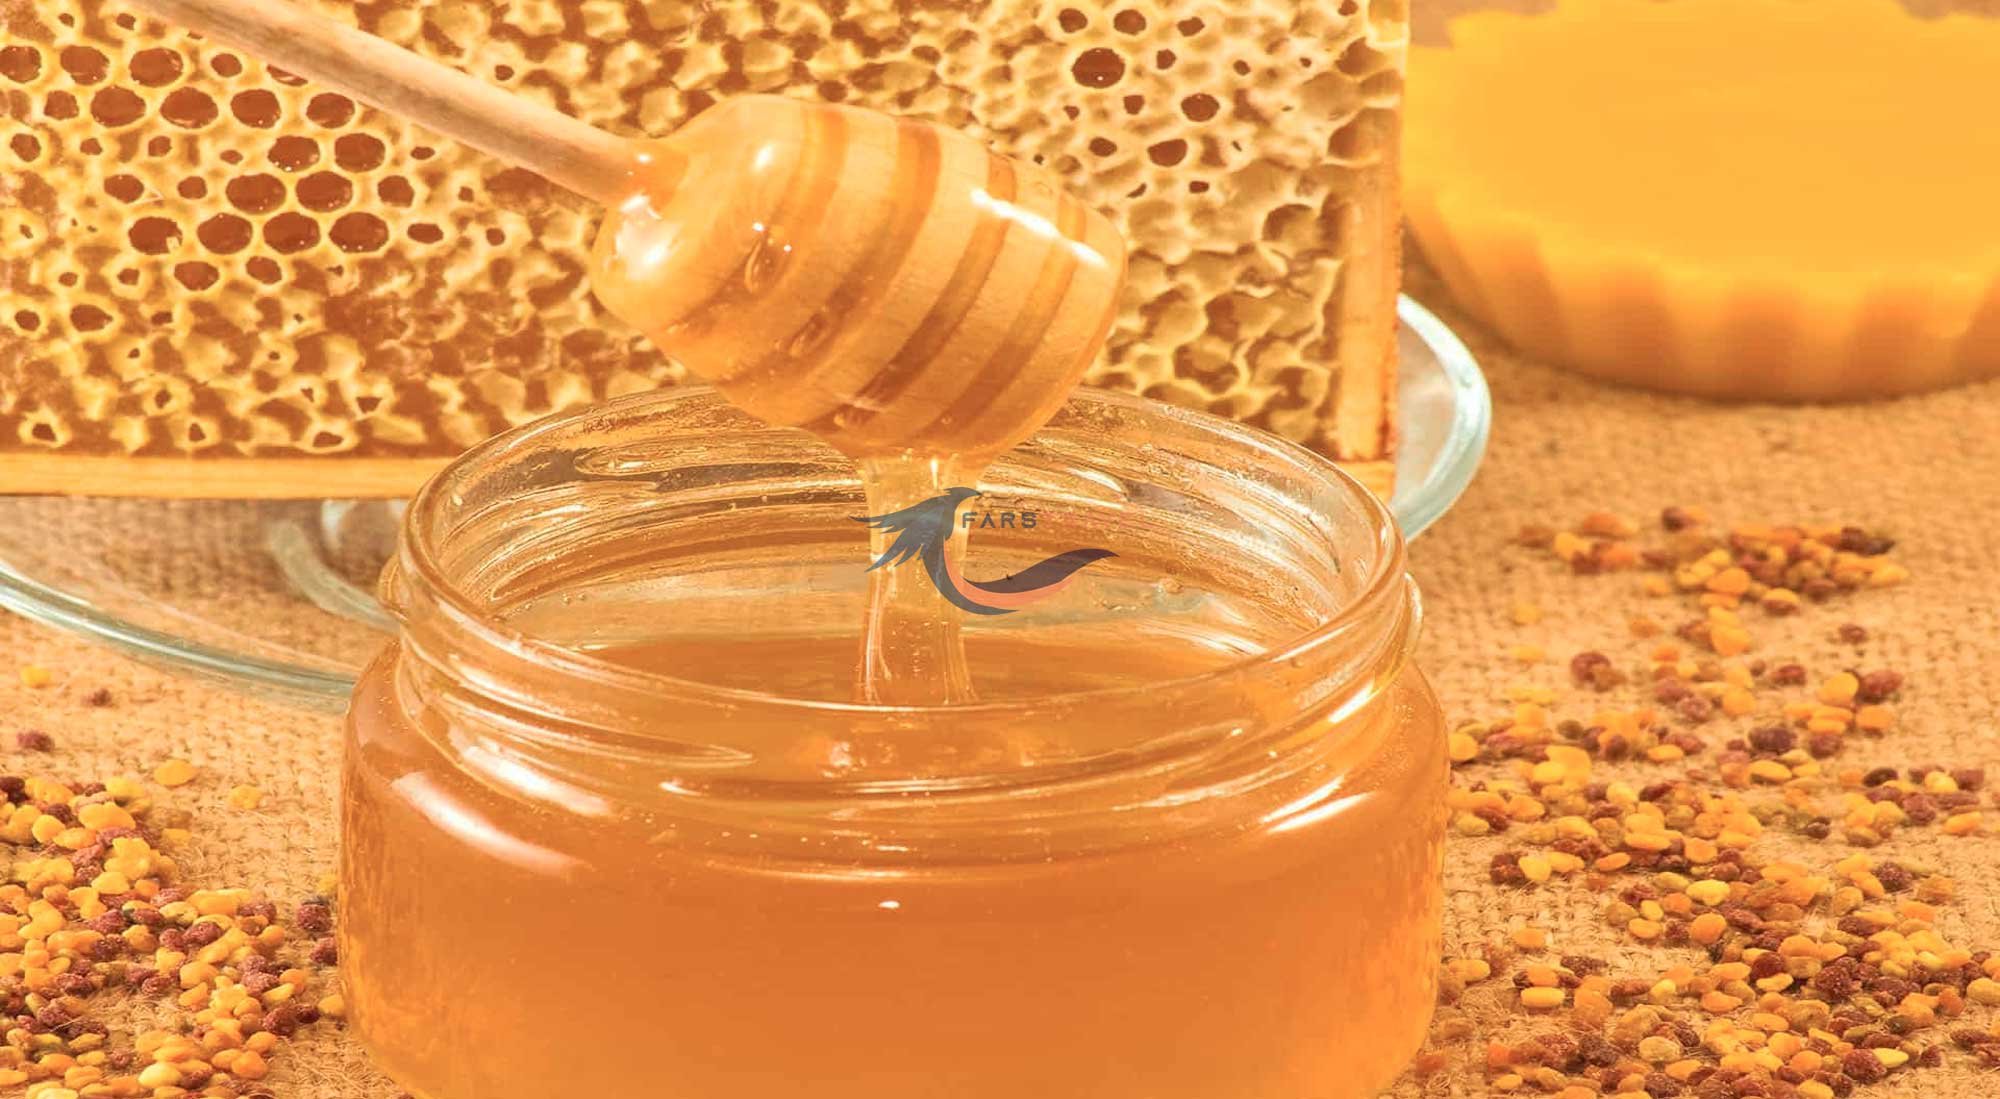 Краса мед. Башкирский гречишный мед. Пчелиный мёд. Мед и пчелопродукты. Мёд и продукты пчеловодства.